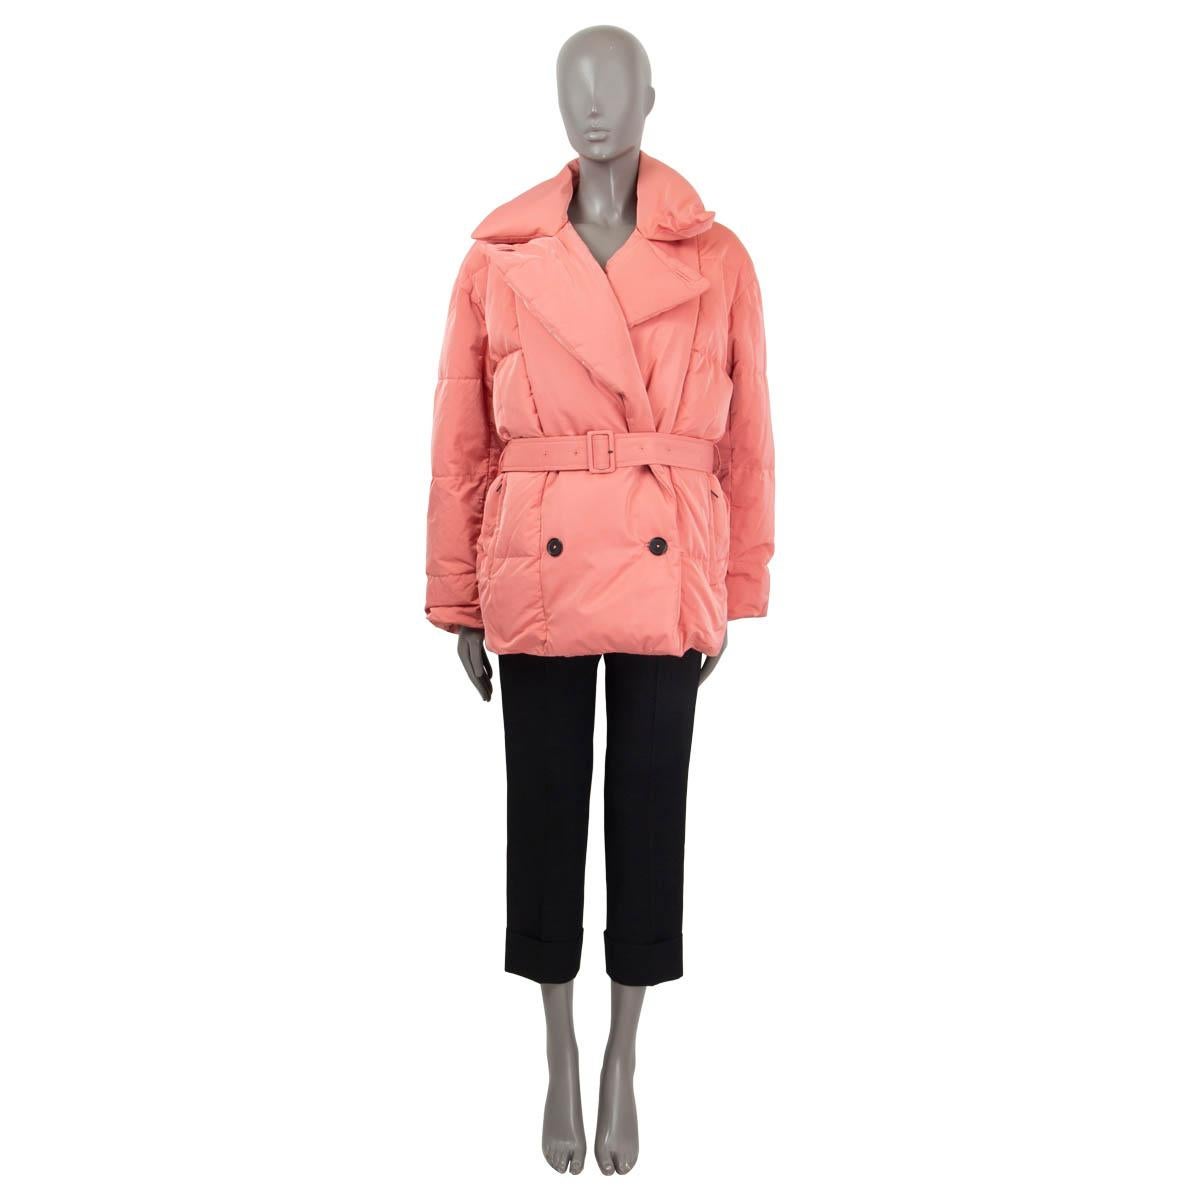 100% authentique Jil Sander oversized double breastasted down jacket in pink polyester (70%) and silk (30%). Il est doté d'une ceinture amovible assortie et de deux poches zippées. S'ouvre par des boutons sur le devant. Doublure en polyester noir